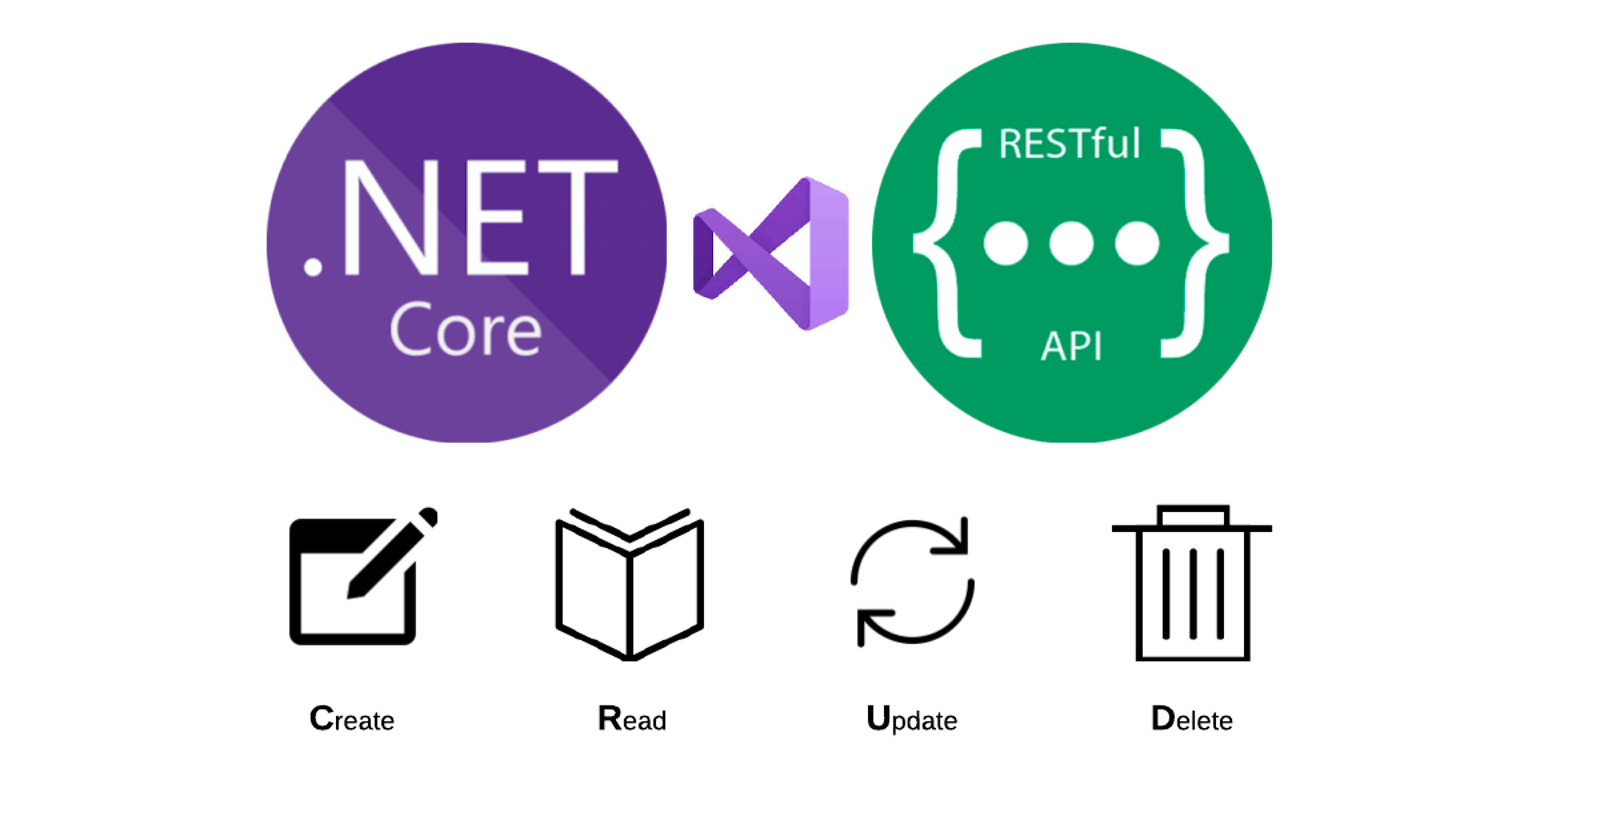 Designing REST APIs in .NET 5